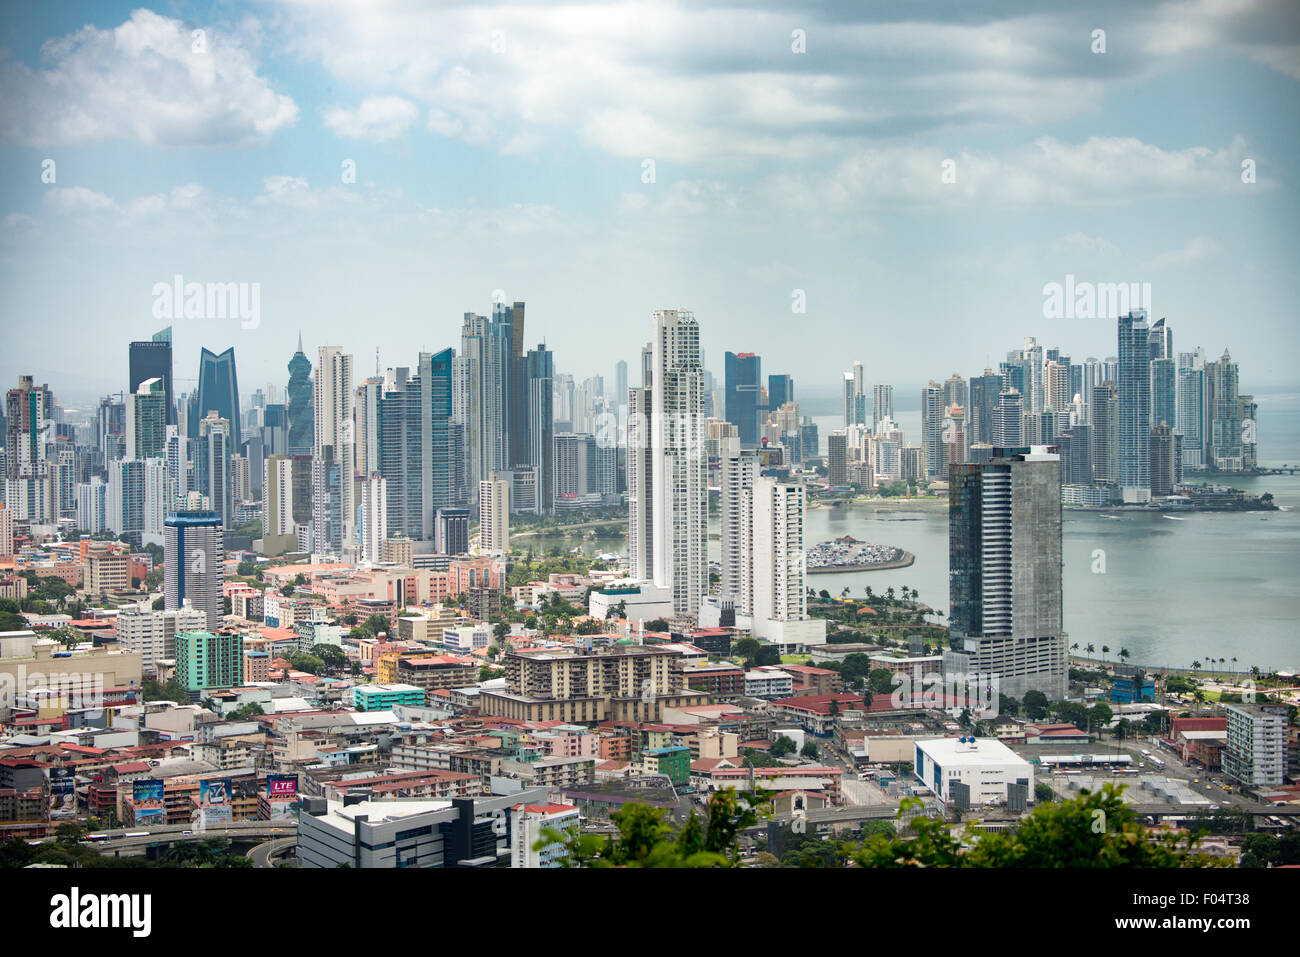 PANAMA CITY, Panama--die Wolkenkratzer von die neue Panama City Skyline als Samen von Ancon Hügel. Ancon Hill ist nur 654-Füße hoch aber befiehlt eine beeindruckende Aussicht über die alte und neue Abschnitte von Panama City. Mit Blick auf den Pazifischen Ozean und der Eingang zu den Panama-Kanal die Gegend war historisch gesehen, wo die Verwaltung des Panama-Kanals wurde zentriert und hat jetzt eine Mischung aus High-End-Residences und Ministerien. Stockfoto